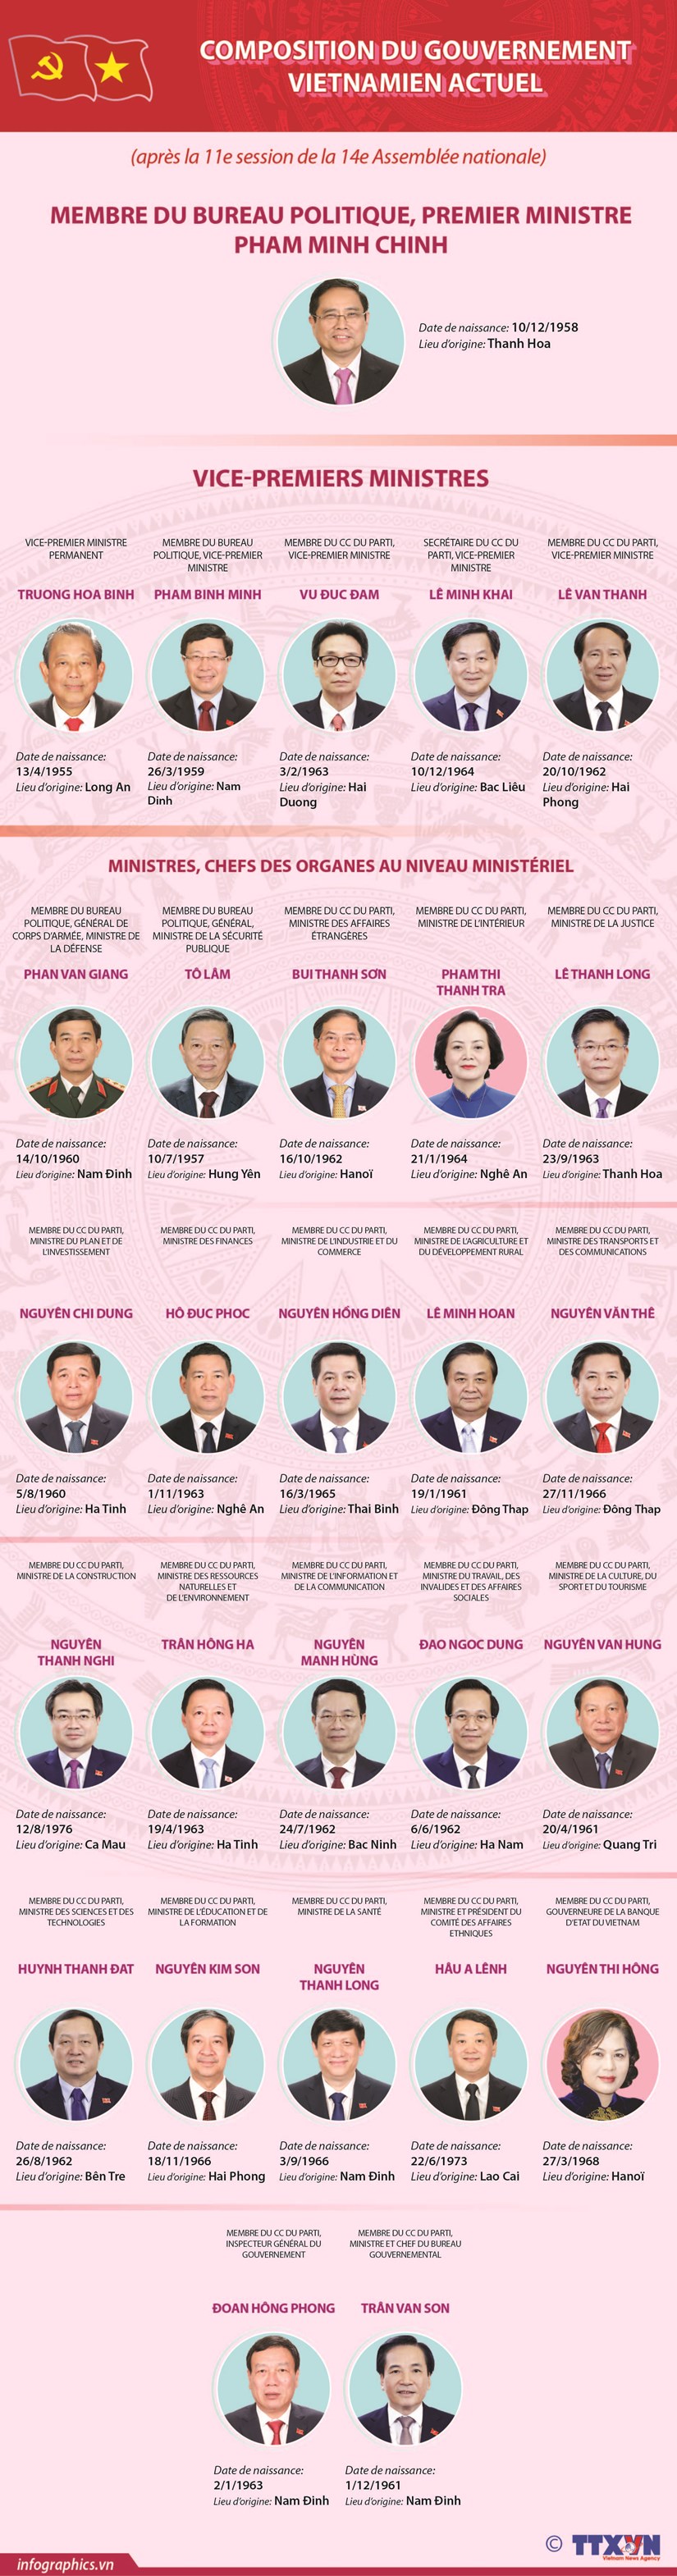 Composition du gouvernement vietnamien actuel hinh anh 1